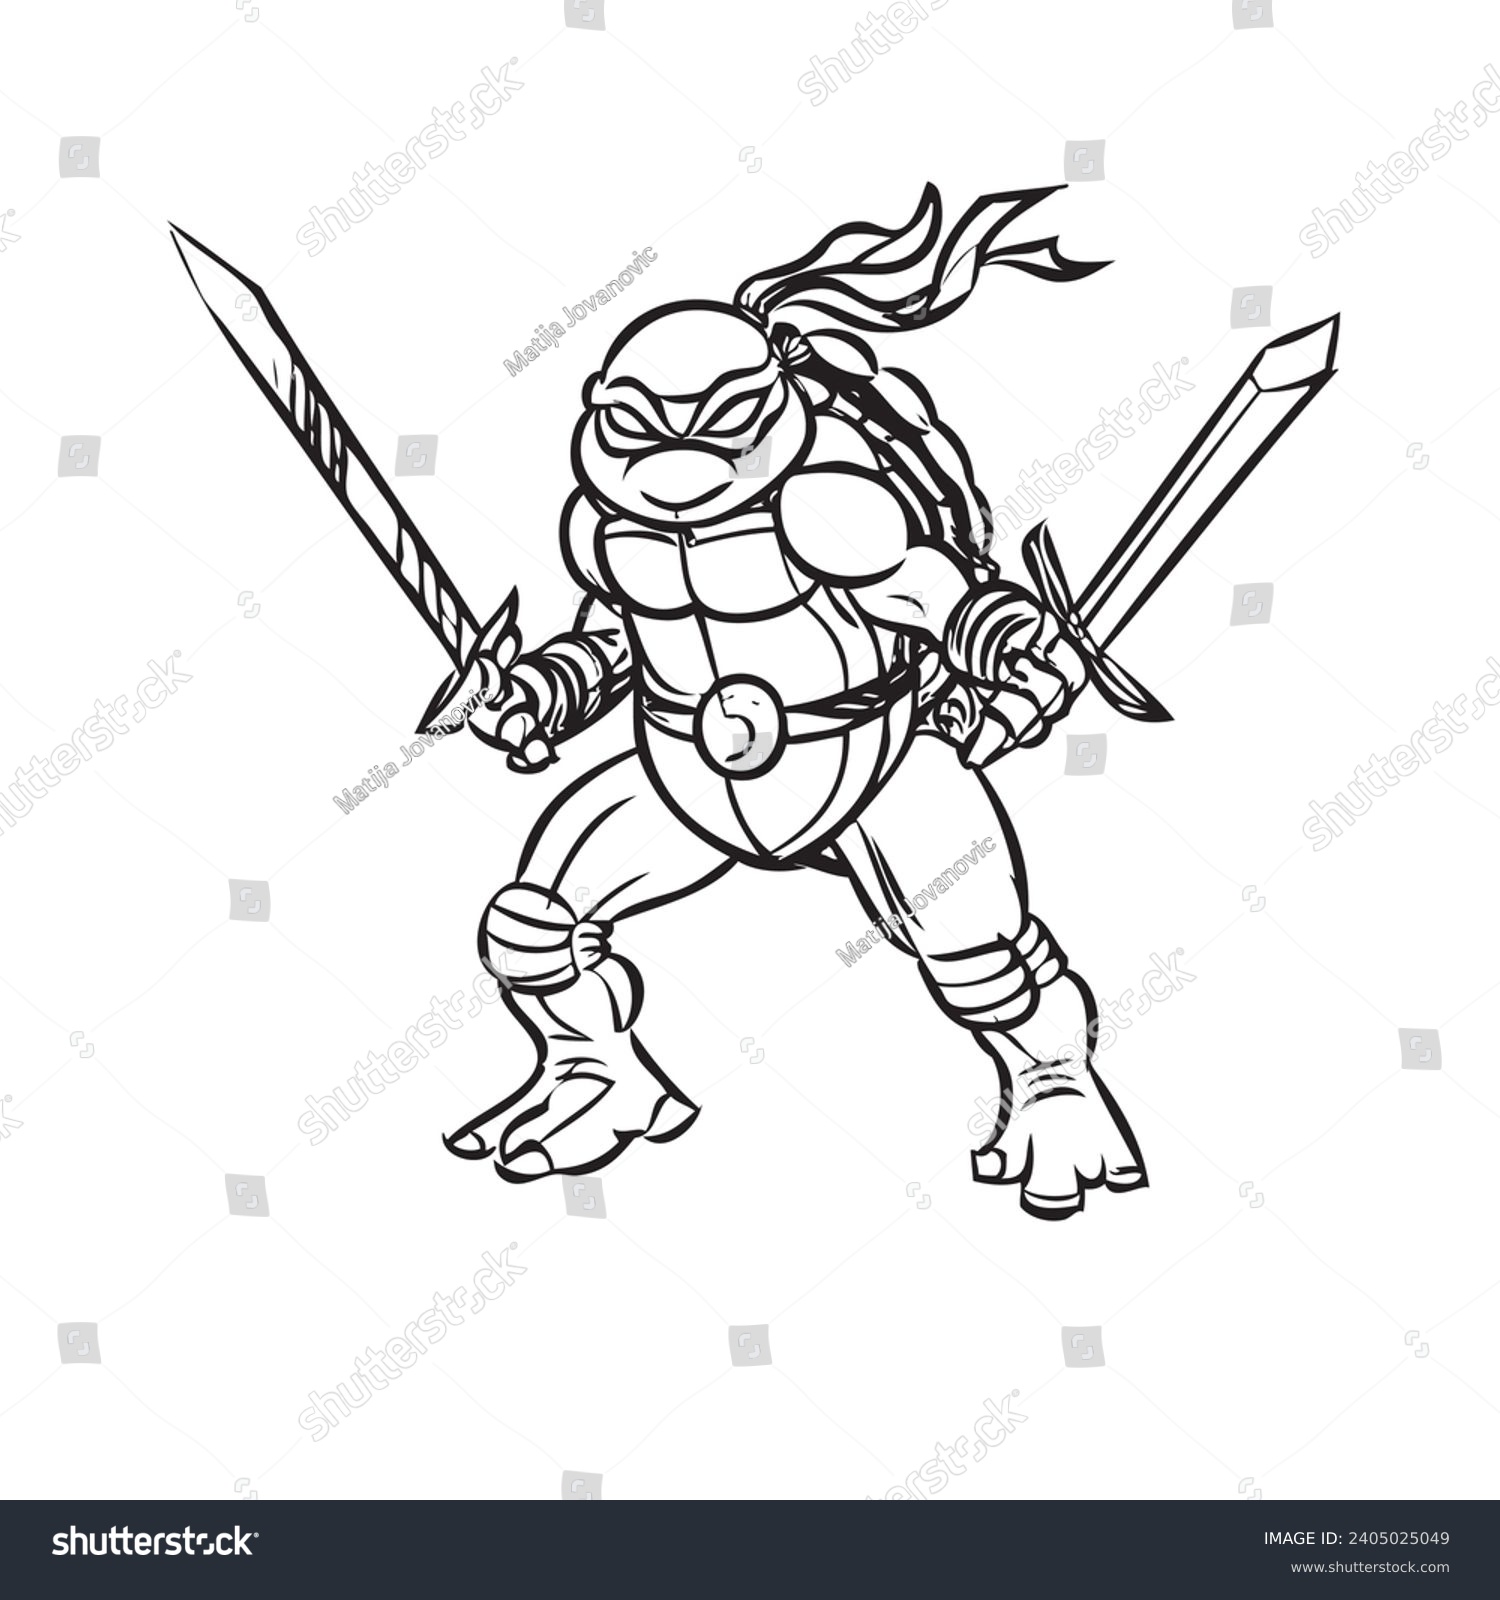 Teenage mutant ninja turtles over royalty